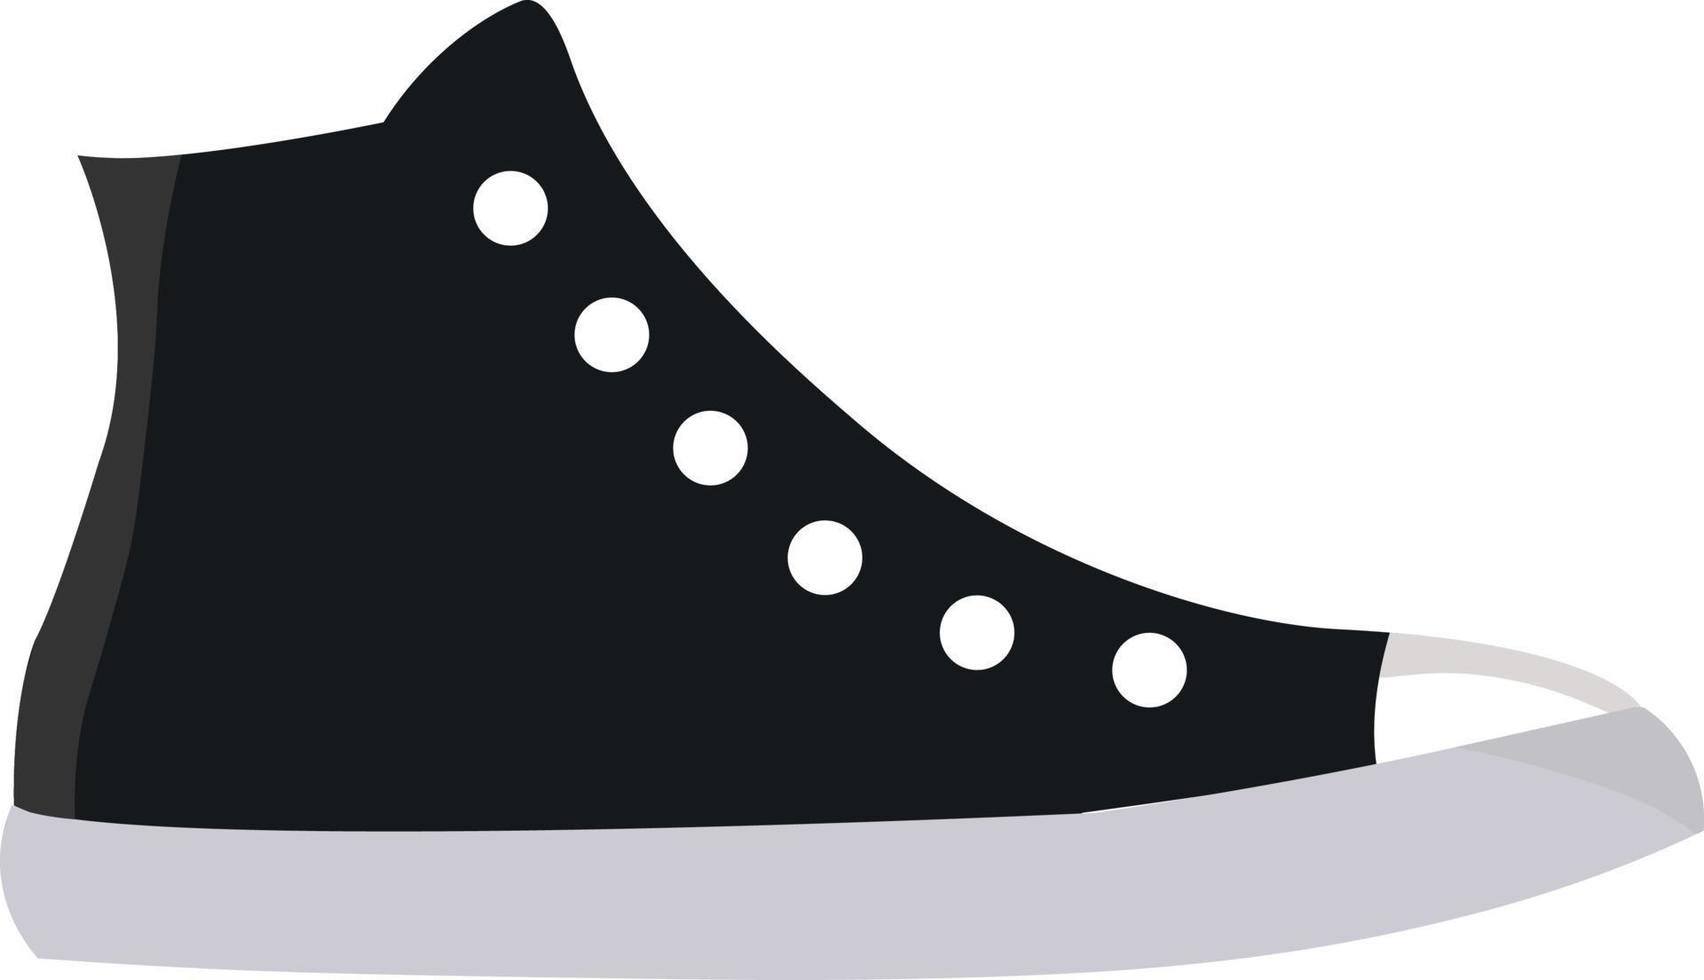 svart sneakers, illustration, vektor på vit bakgrund.